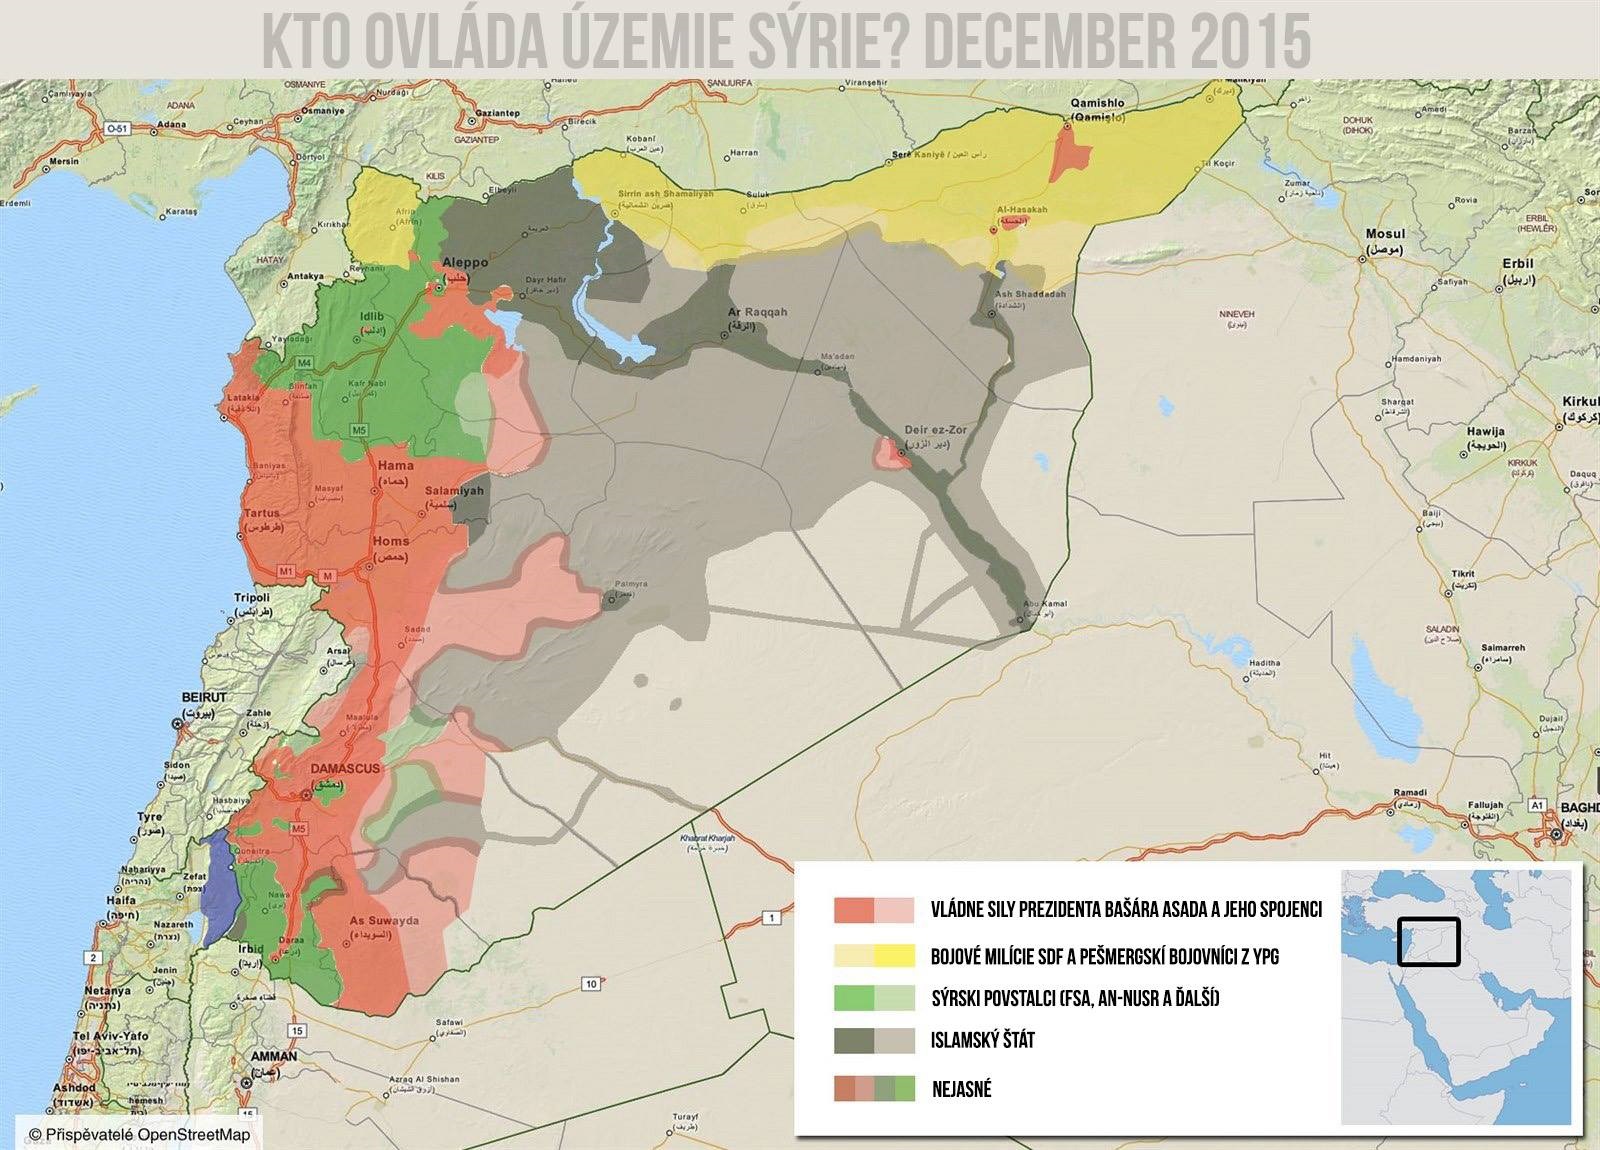 Ovládané územie v Sýrii december 2015 